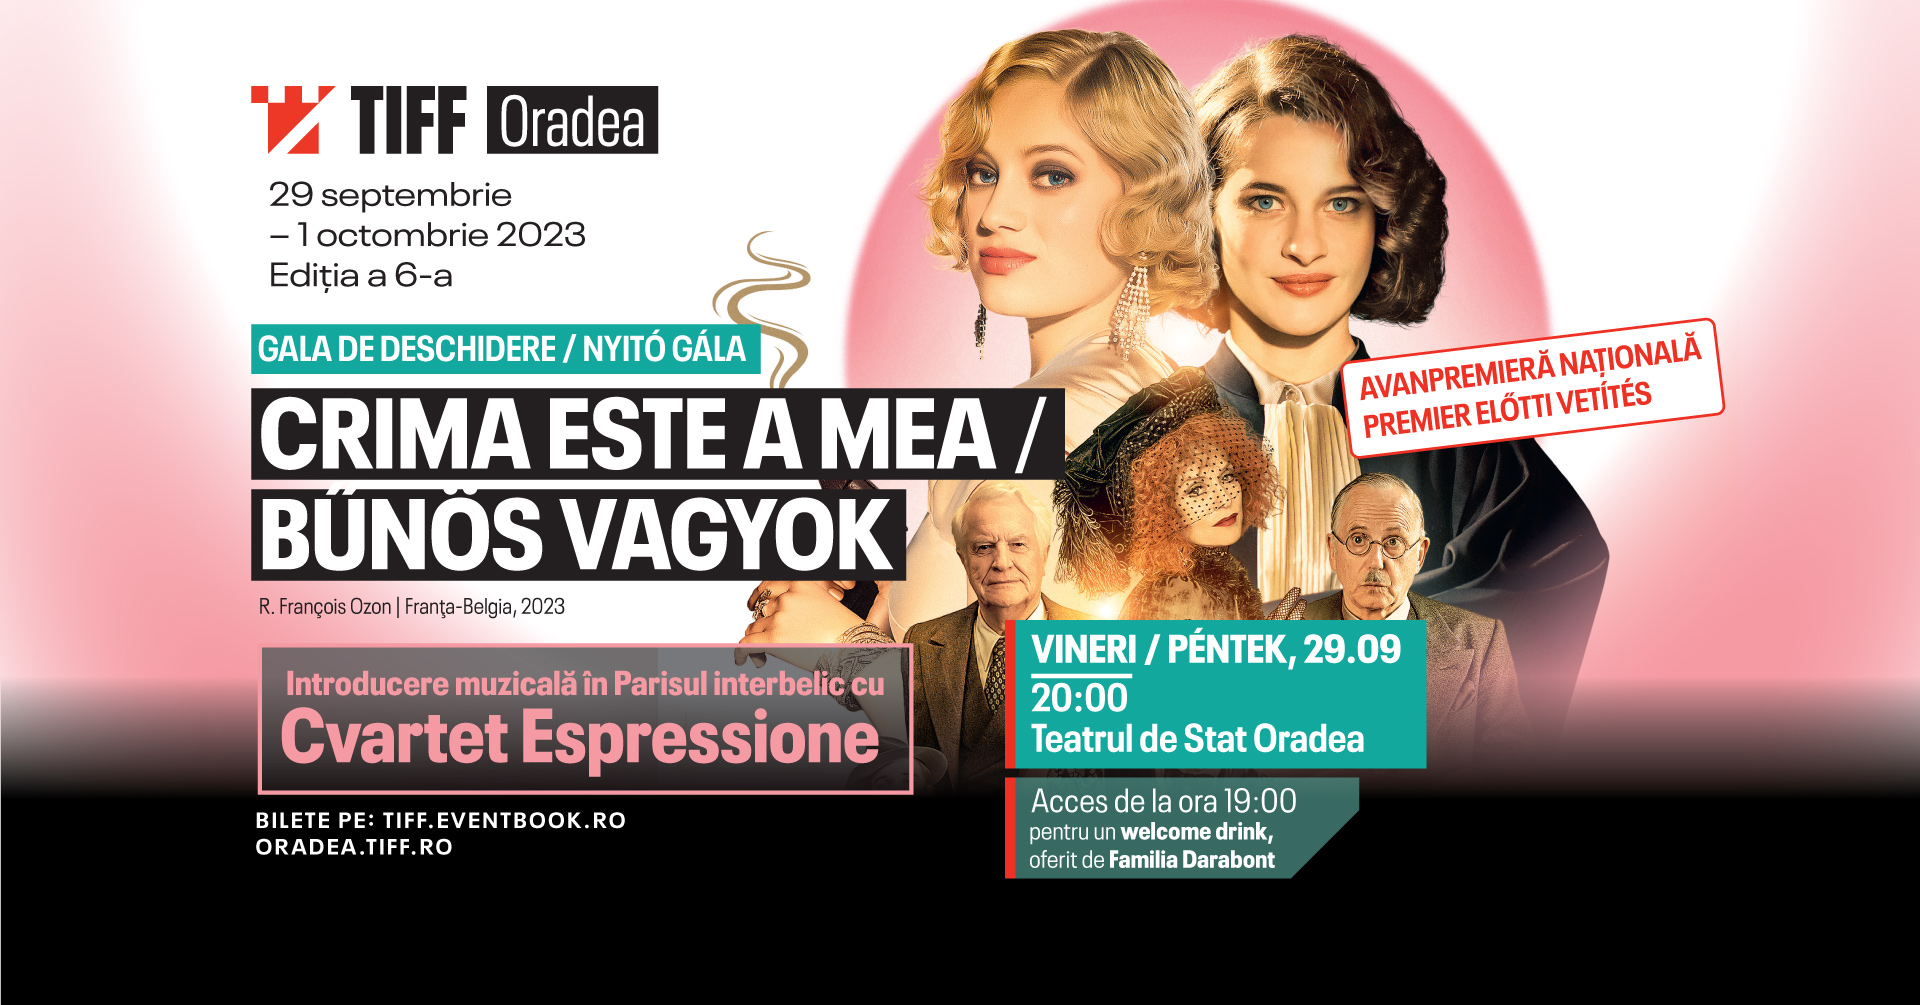 Programul complet și biletele la a 6-a ediție TIFF Oradea sunt disponibile. Avanpremiere, cine-concerte și proiecții-eveniment, în ultimul weekend din septembrie